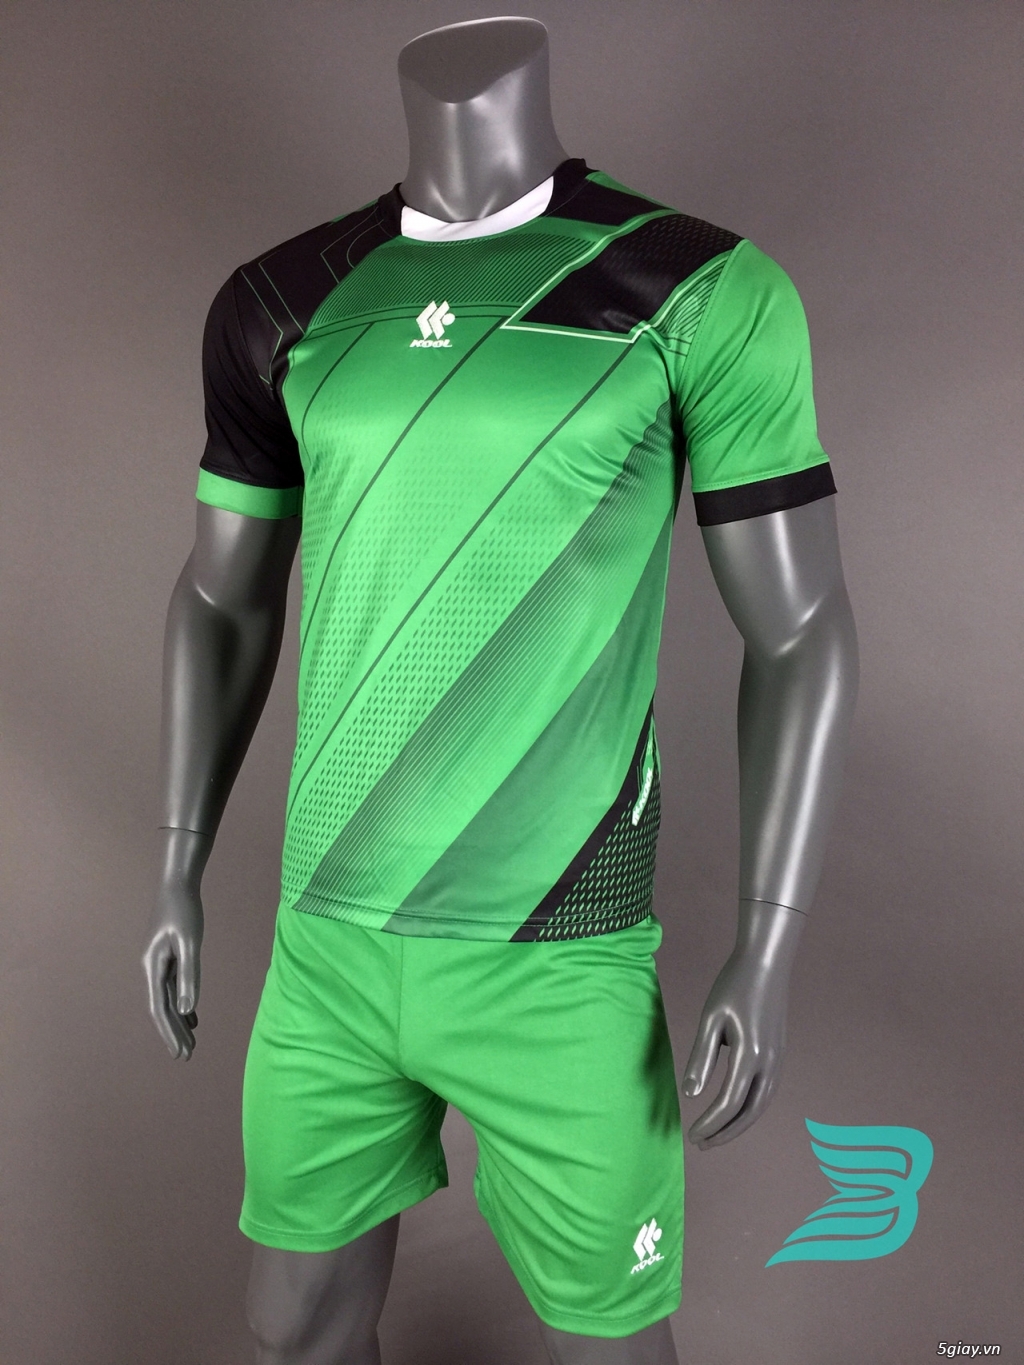 BẢO UYÊN SPORT - Chuyên cung cấp quần áo bóng đá với giá cạnh tranh kèm nhiều ưu đãi - 32